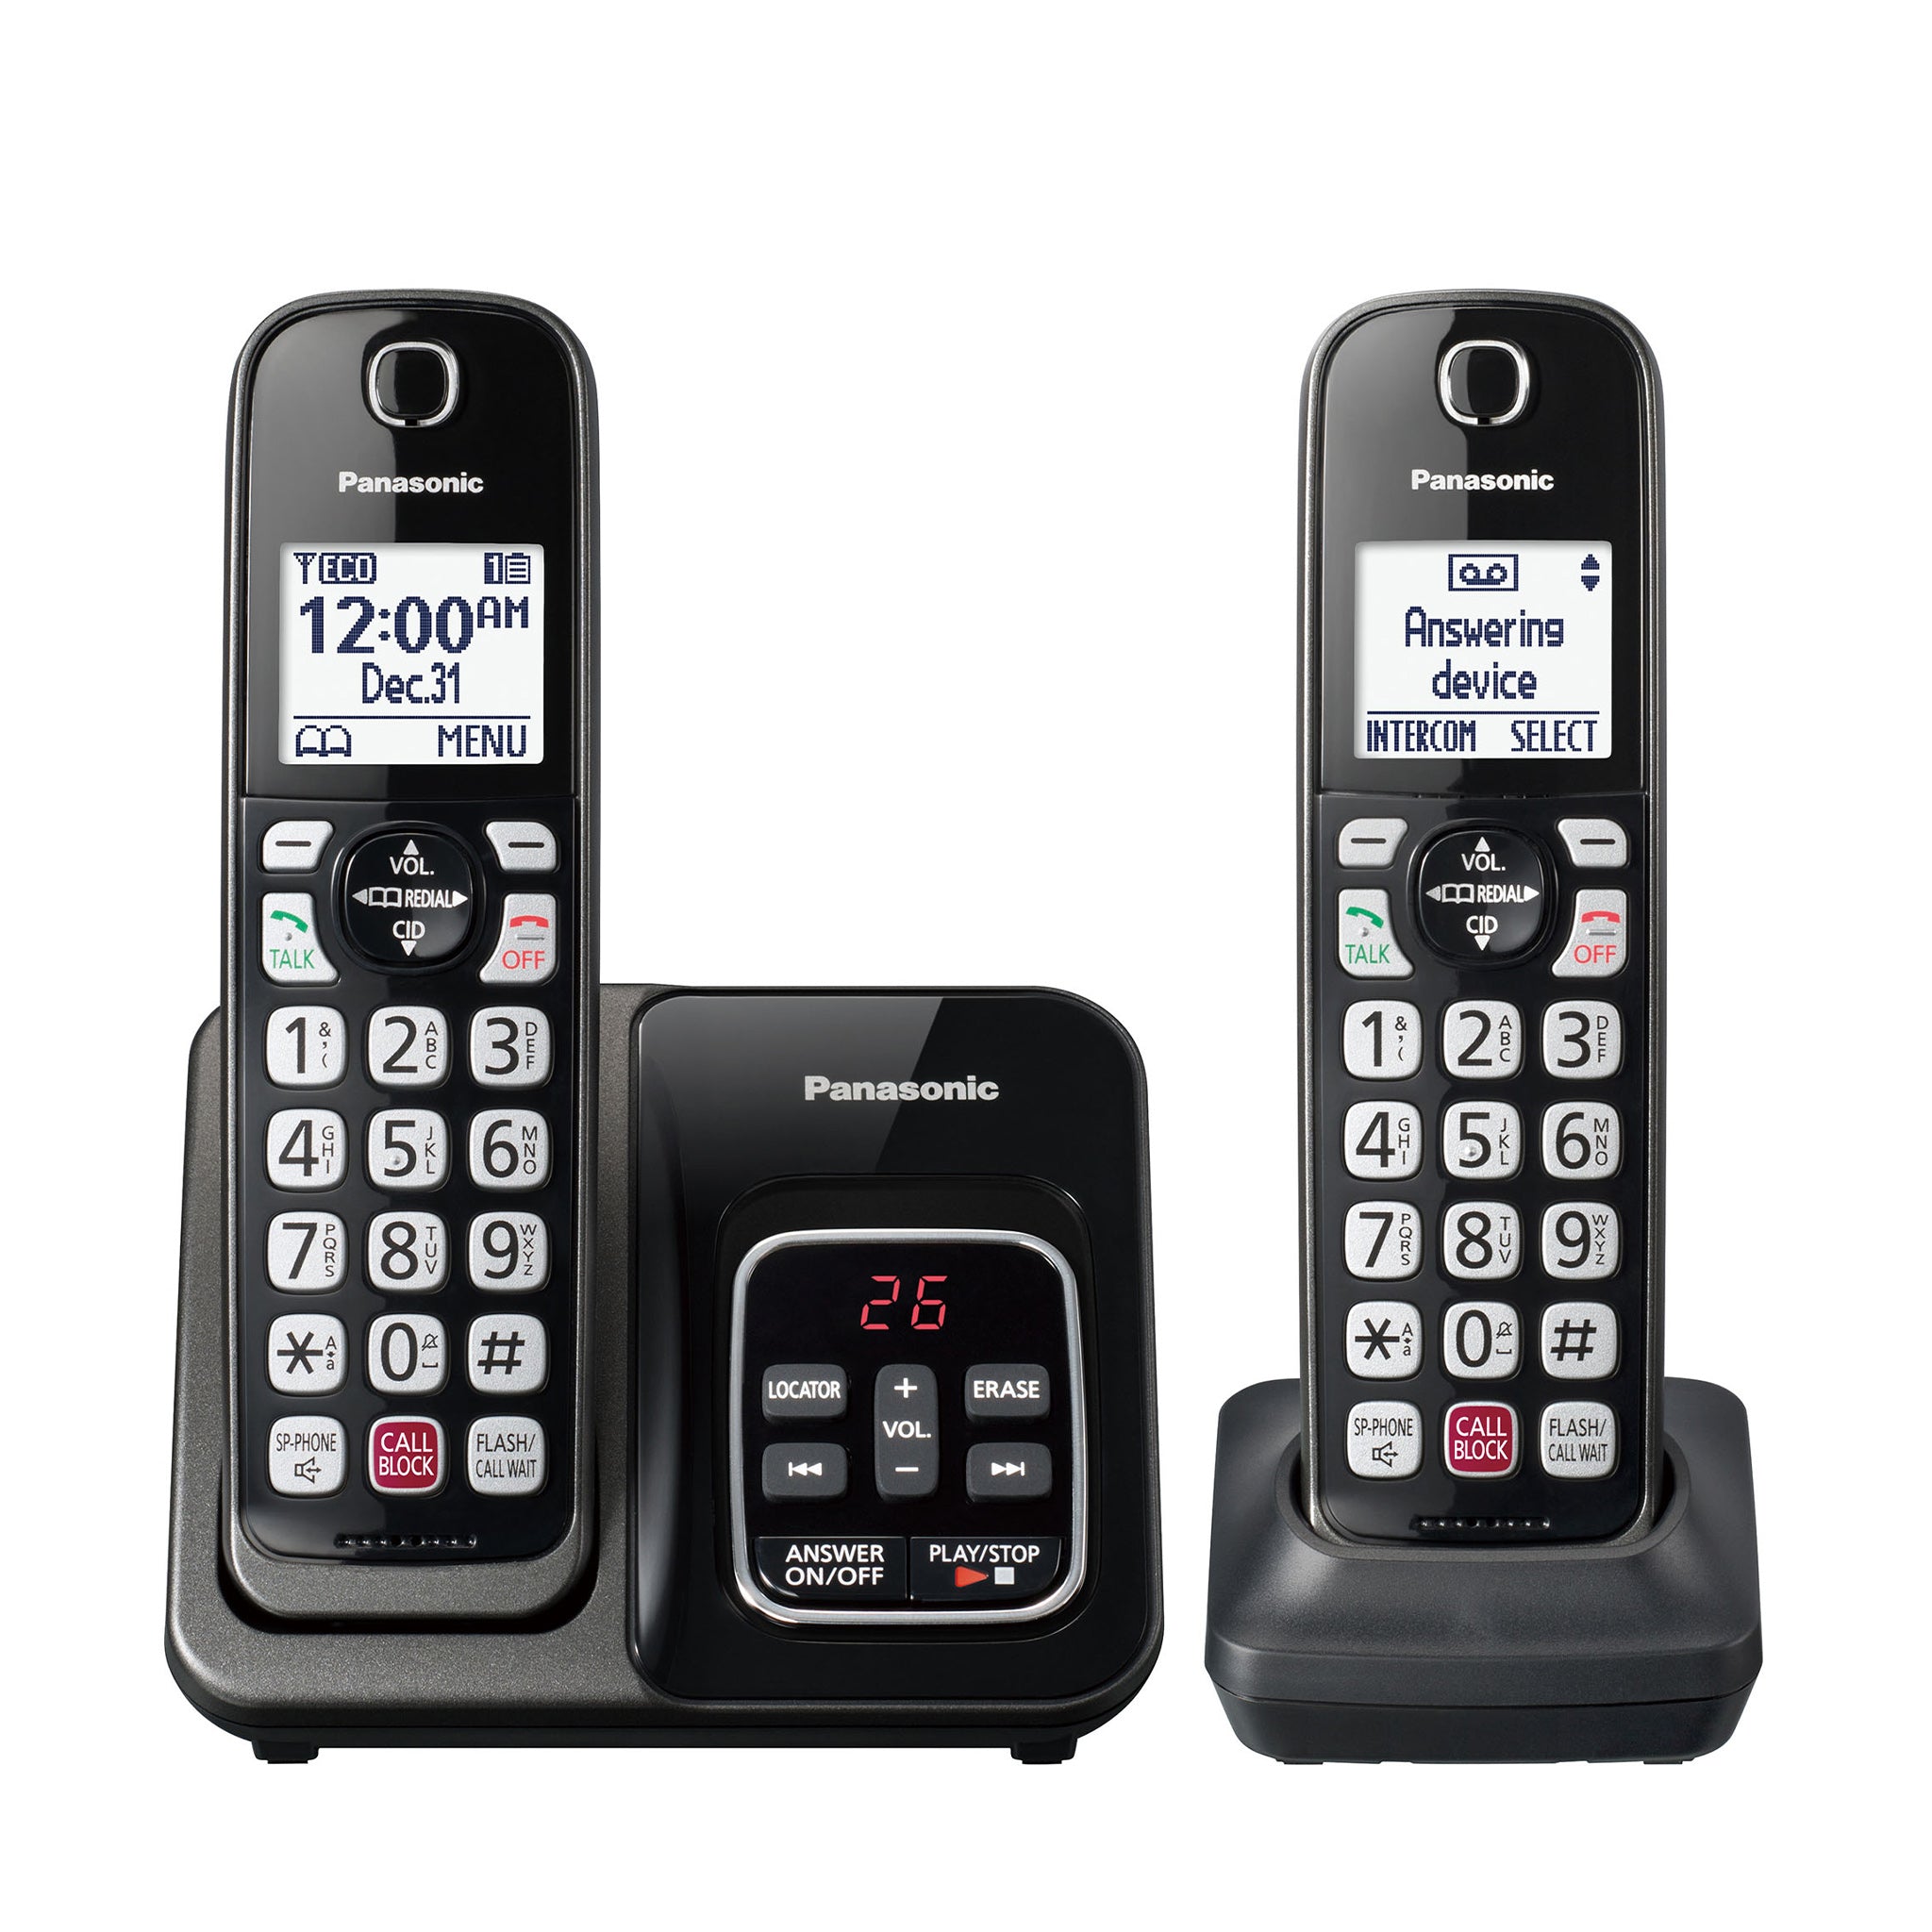 Téléphone sans fil dect blanc avec répondeur - kxtgc420frw - PANASONIC